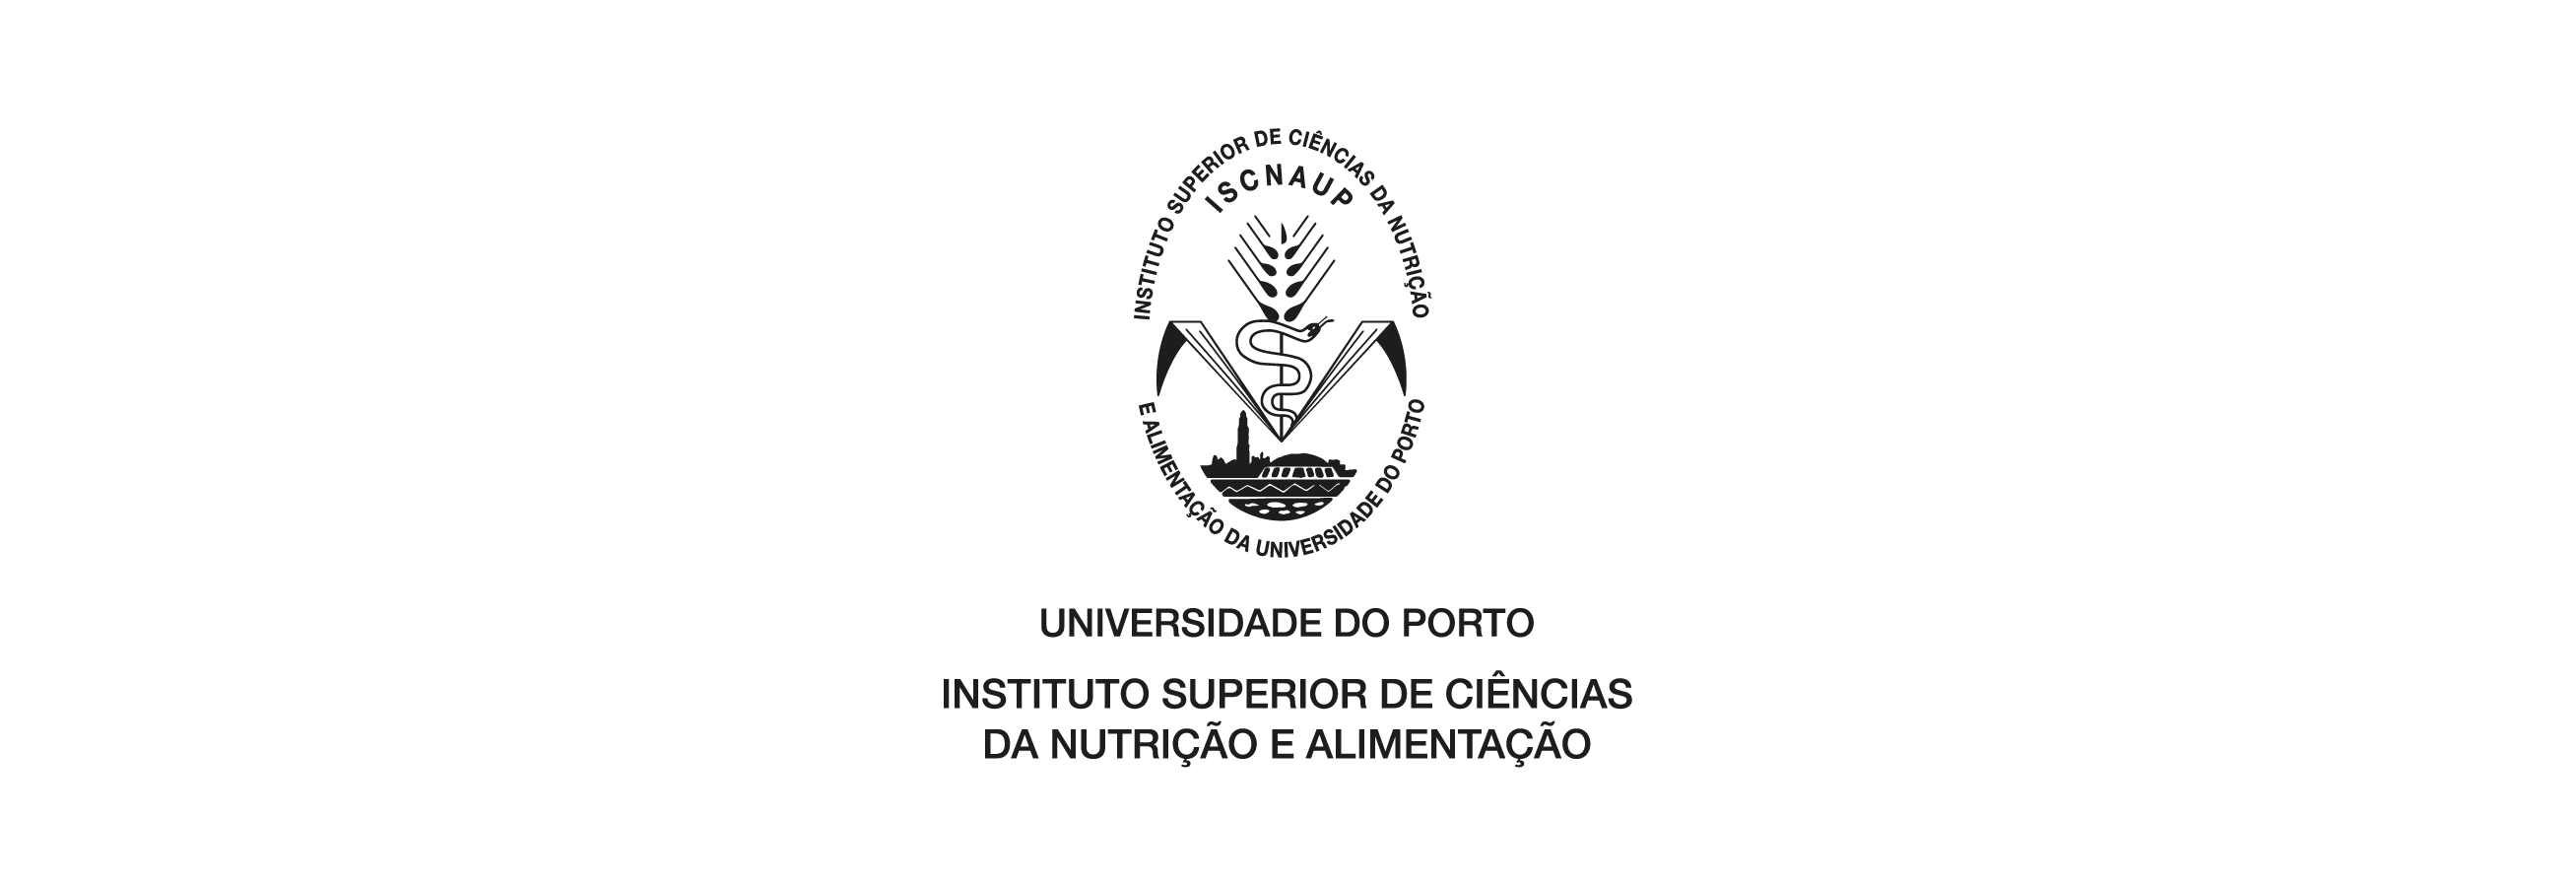 Logótipo - Instituto Superior de Ciências da Nutrição e Alimentação - Universidade do Porto (1996)